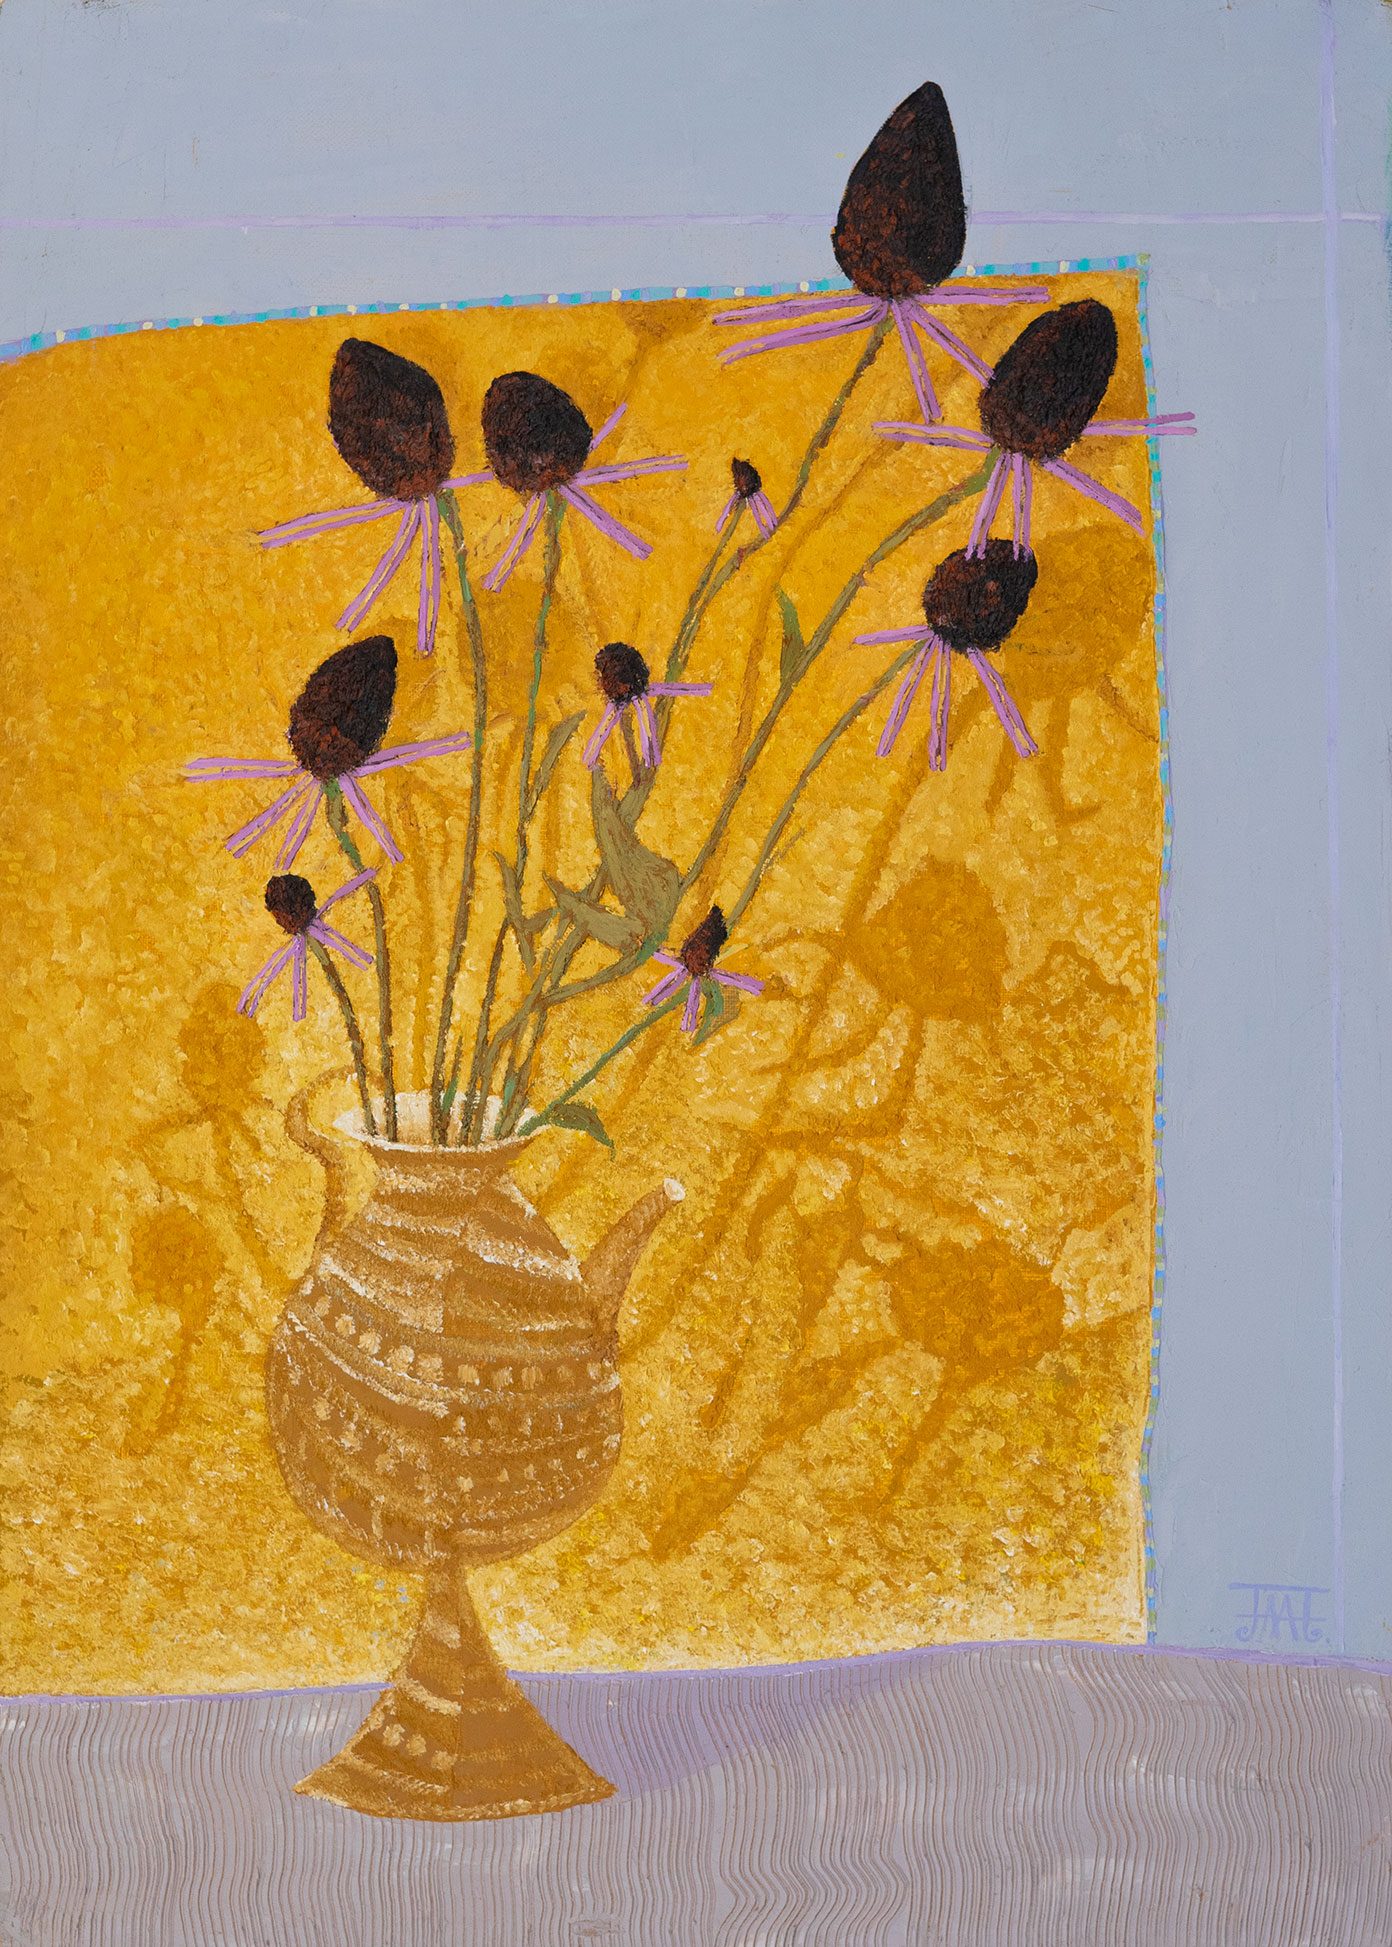 Autumn - 1, Alla Lipatova, Buy the painting Oil